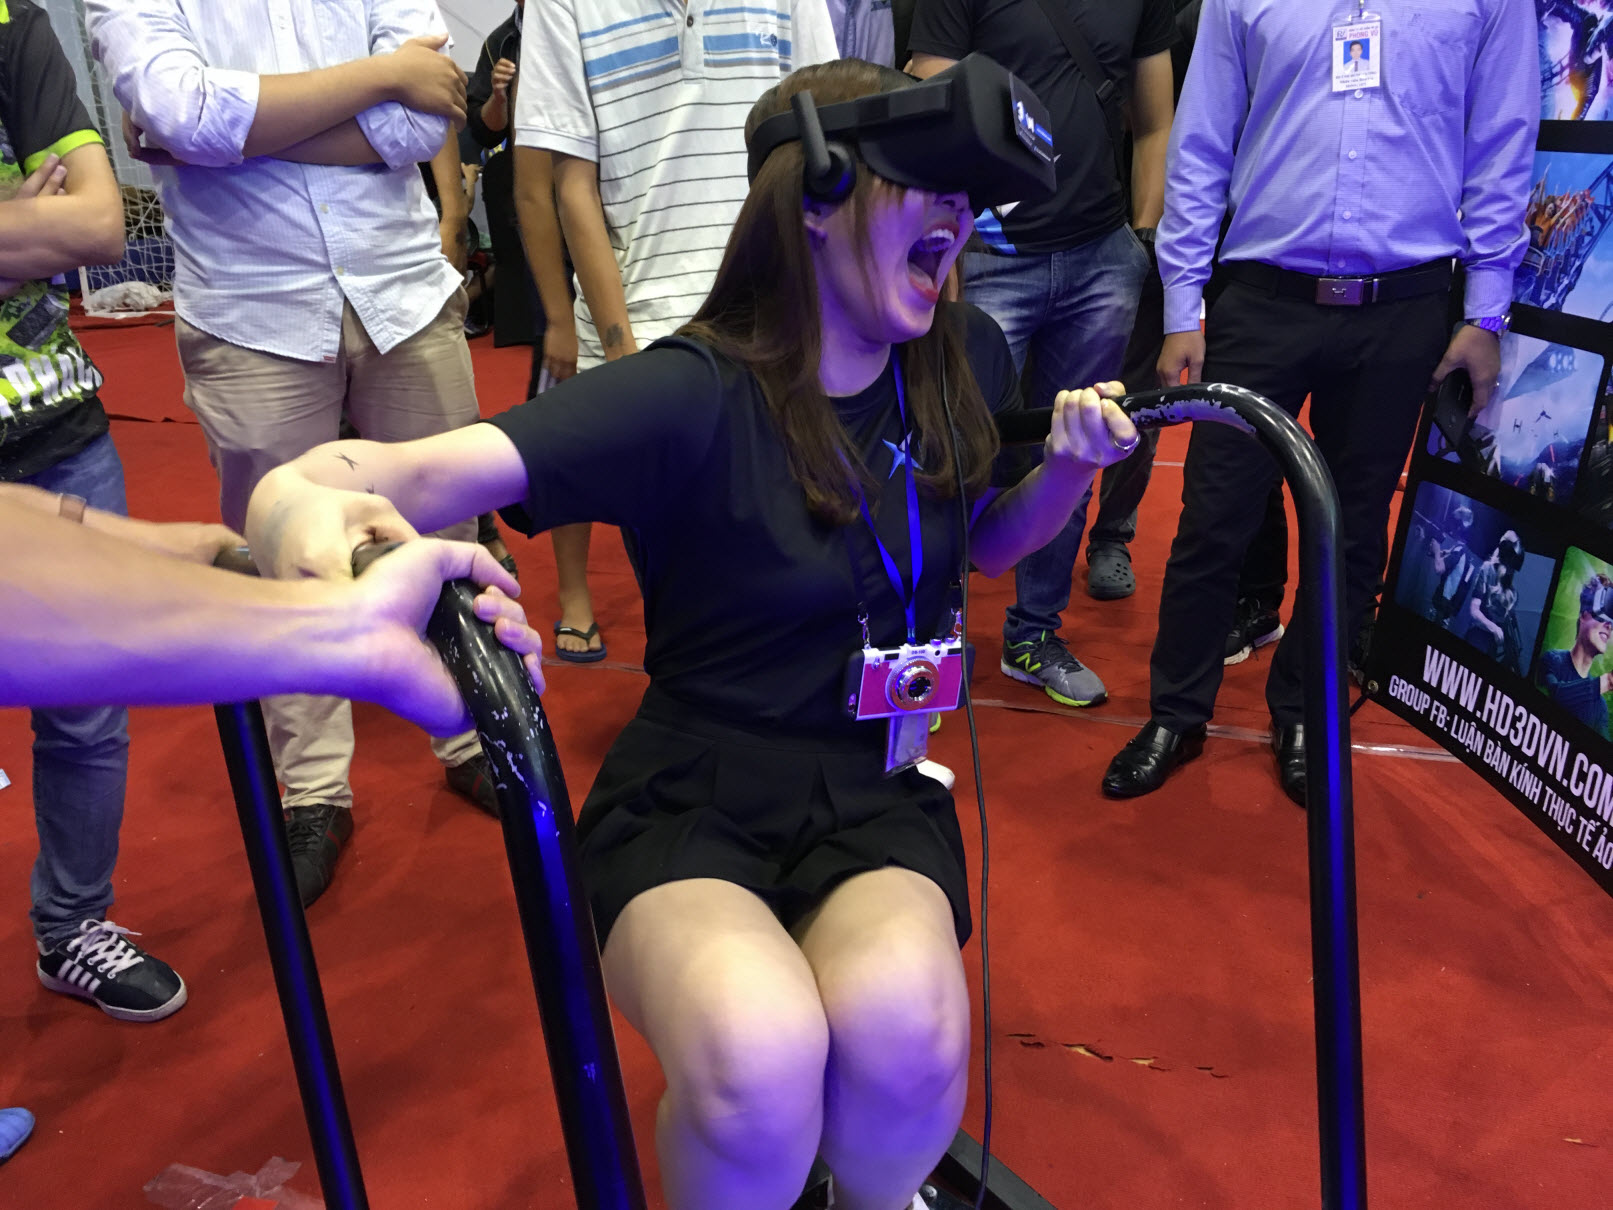 Kính Thực Tế Ào Samsung Gear VR ( S6 , S7 , Note 5 ) Seal + Tặng Gói Game VR giá 2 triệu - 5